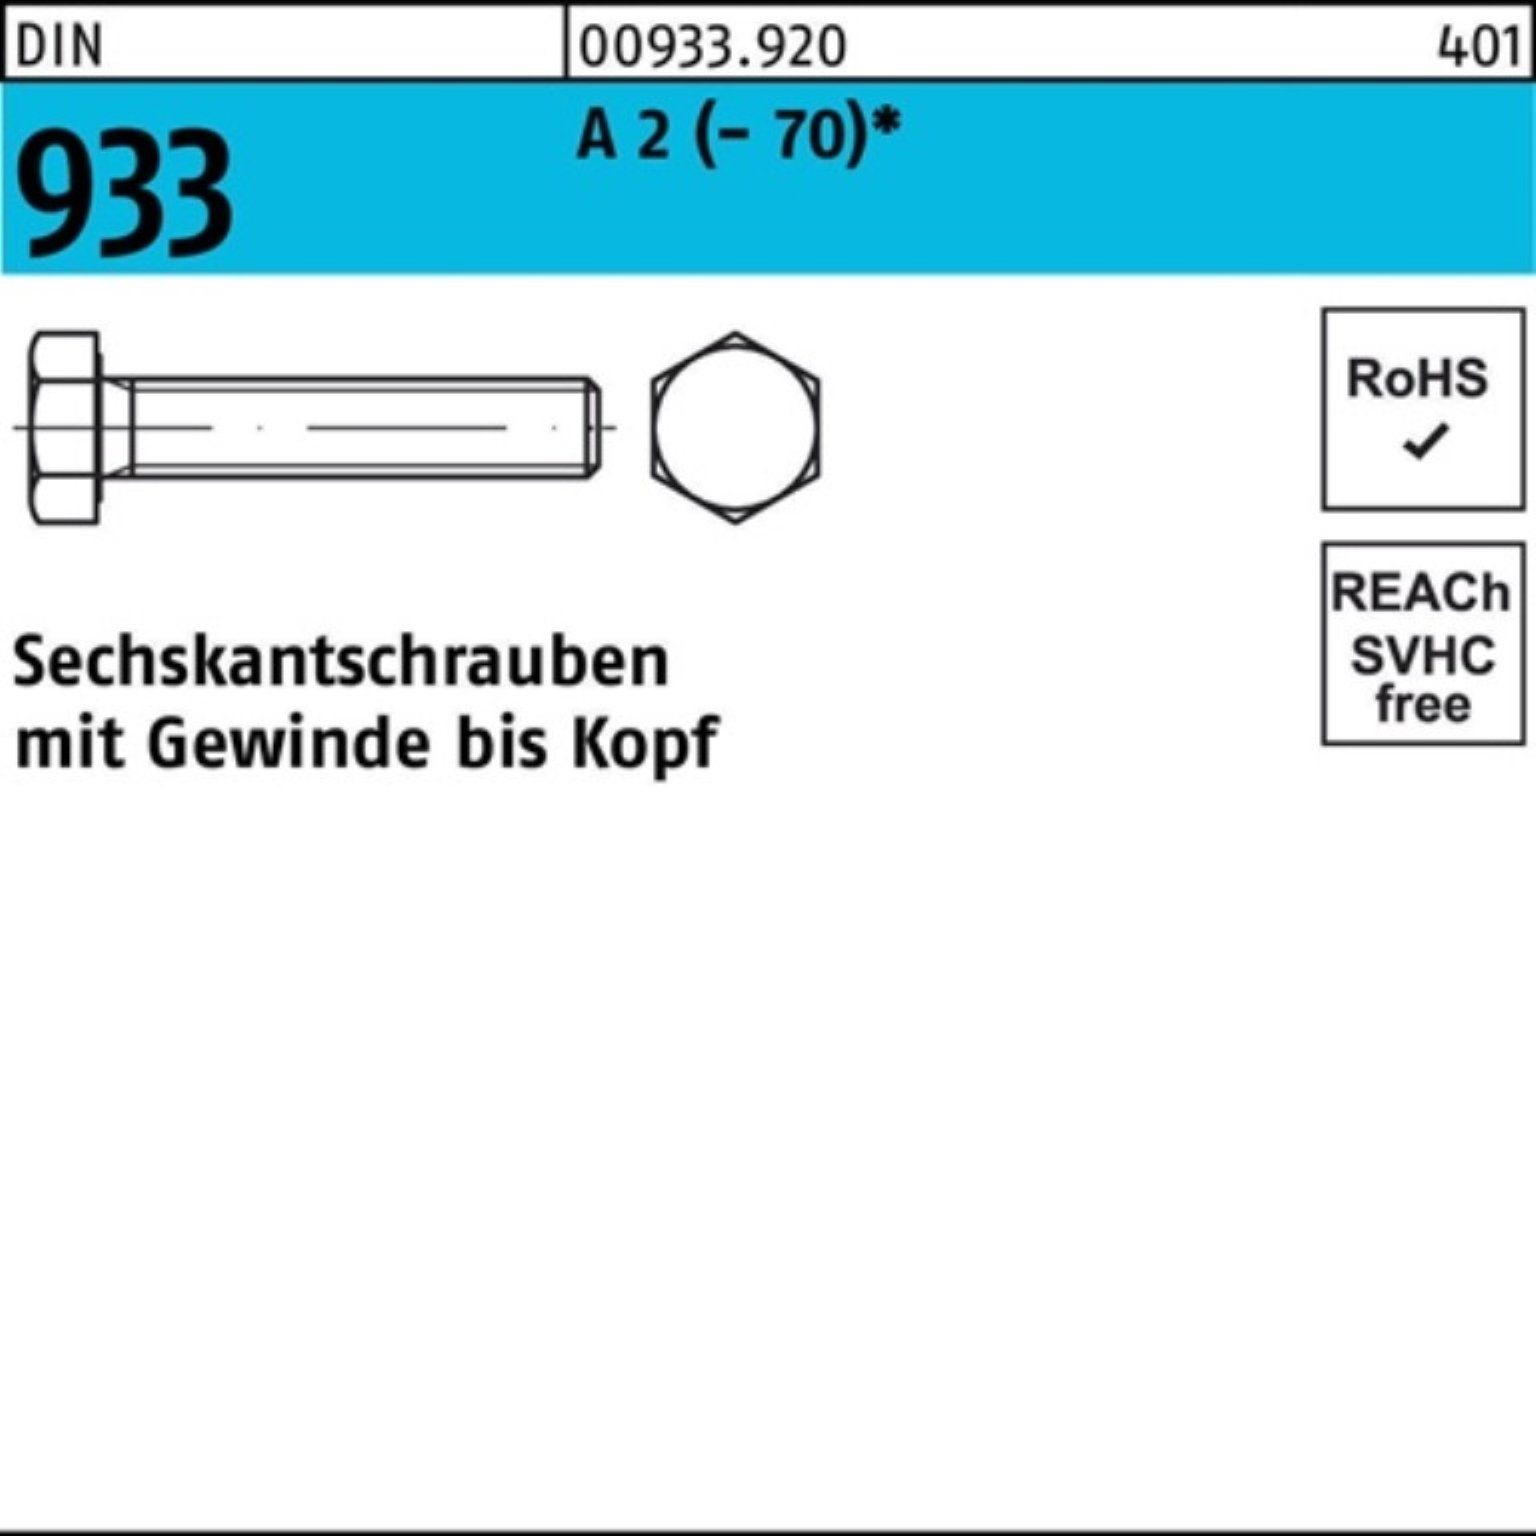 Reyher Sechskantschraube 200er Pack Sechskantschraube DIN 933 VG M6x 16 A 2 (70) 200 Stück D